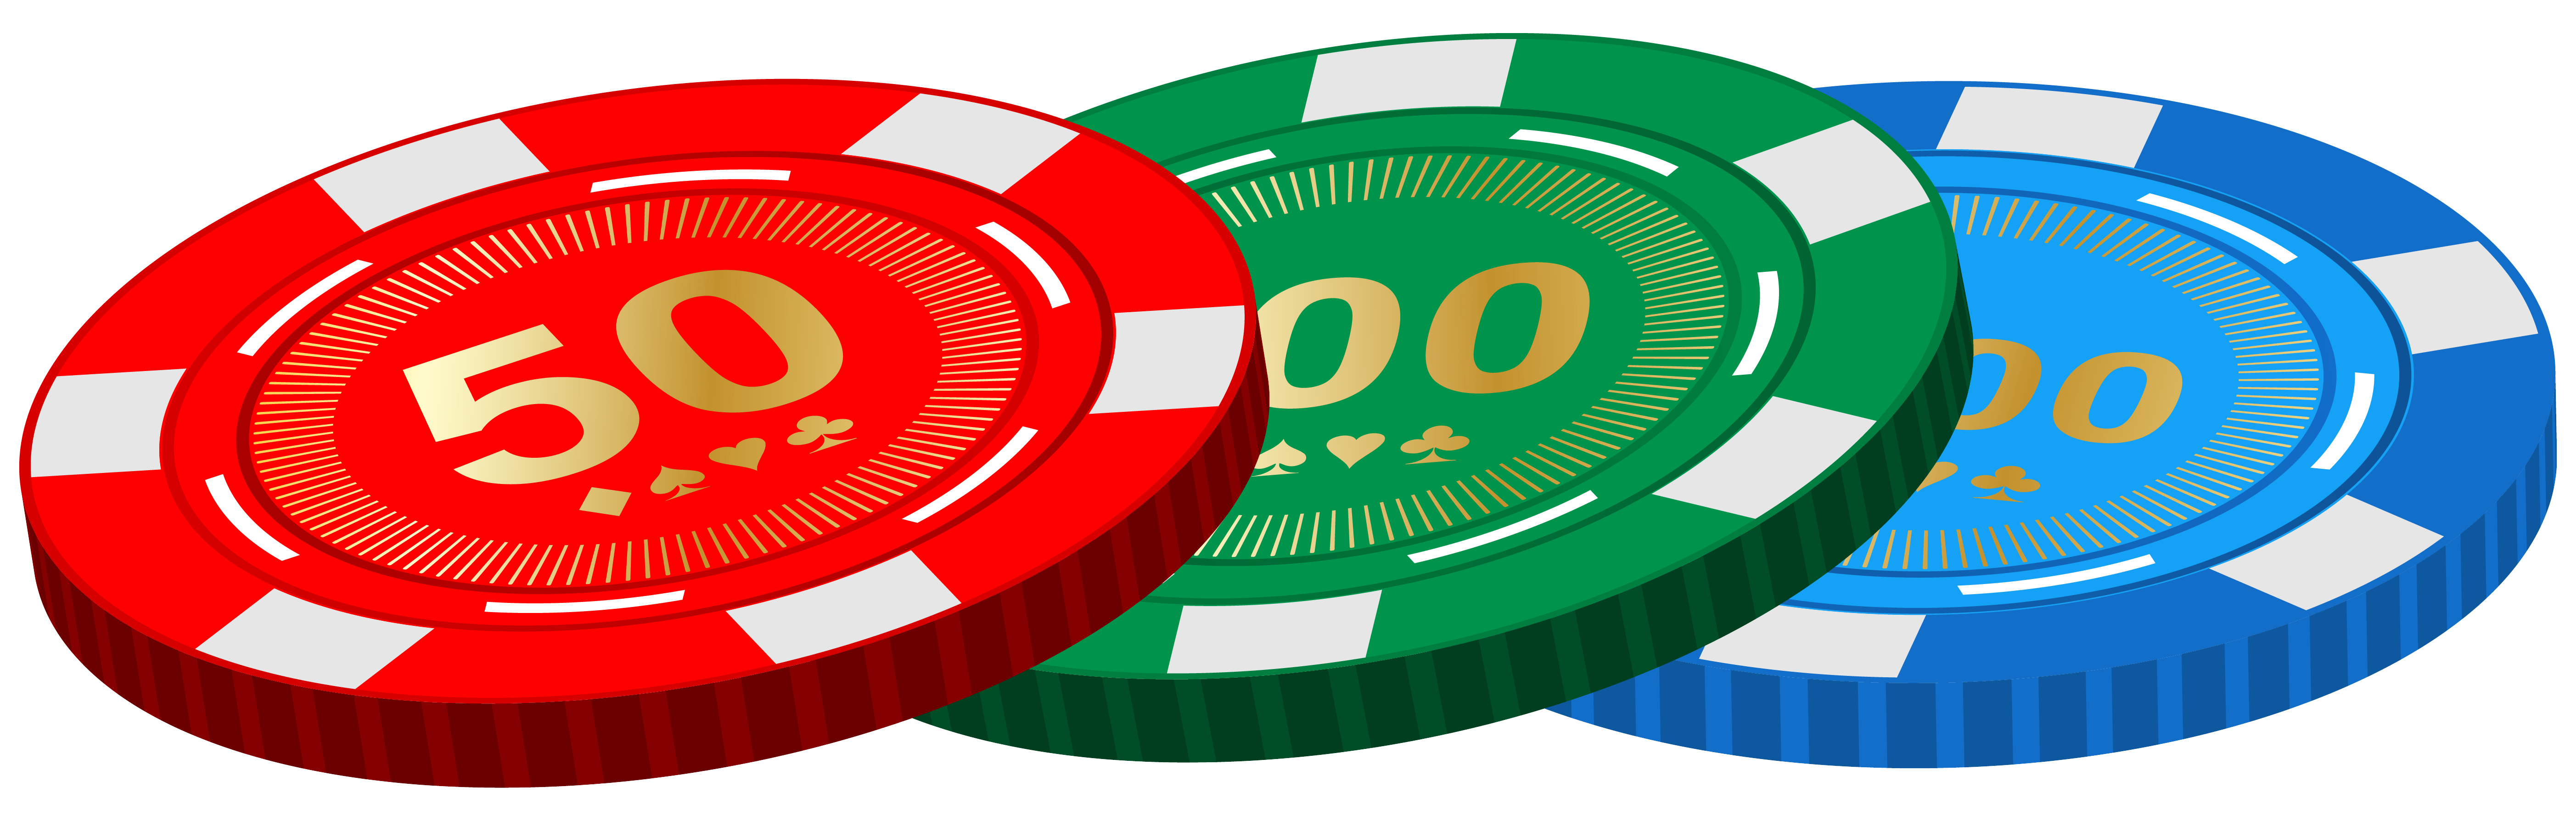 Casino poker chips.